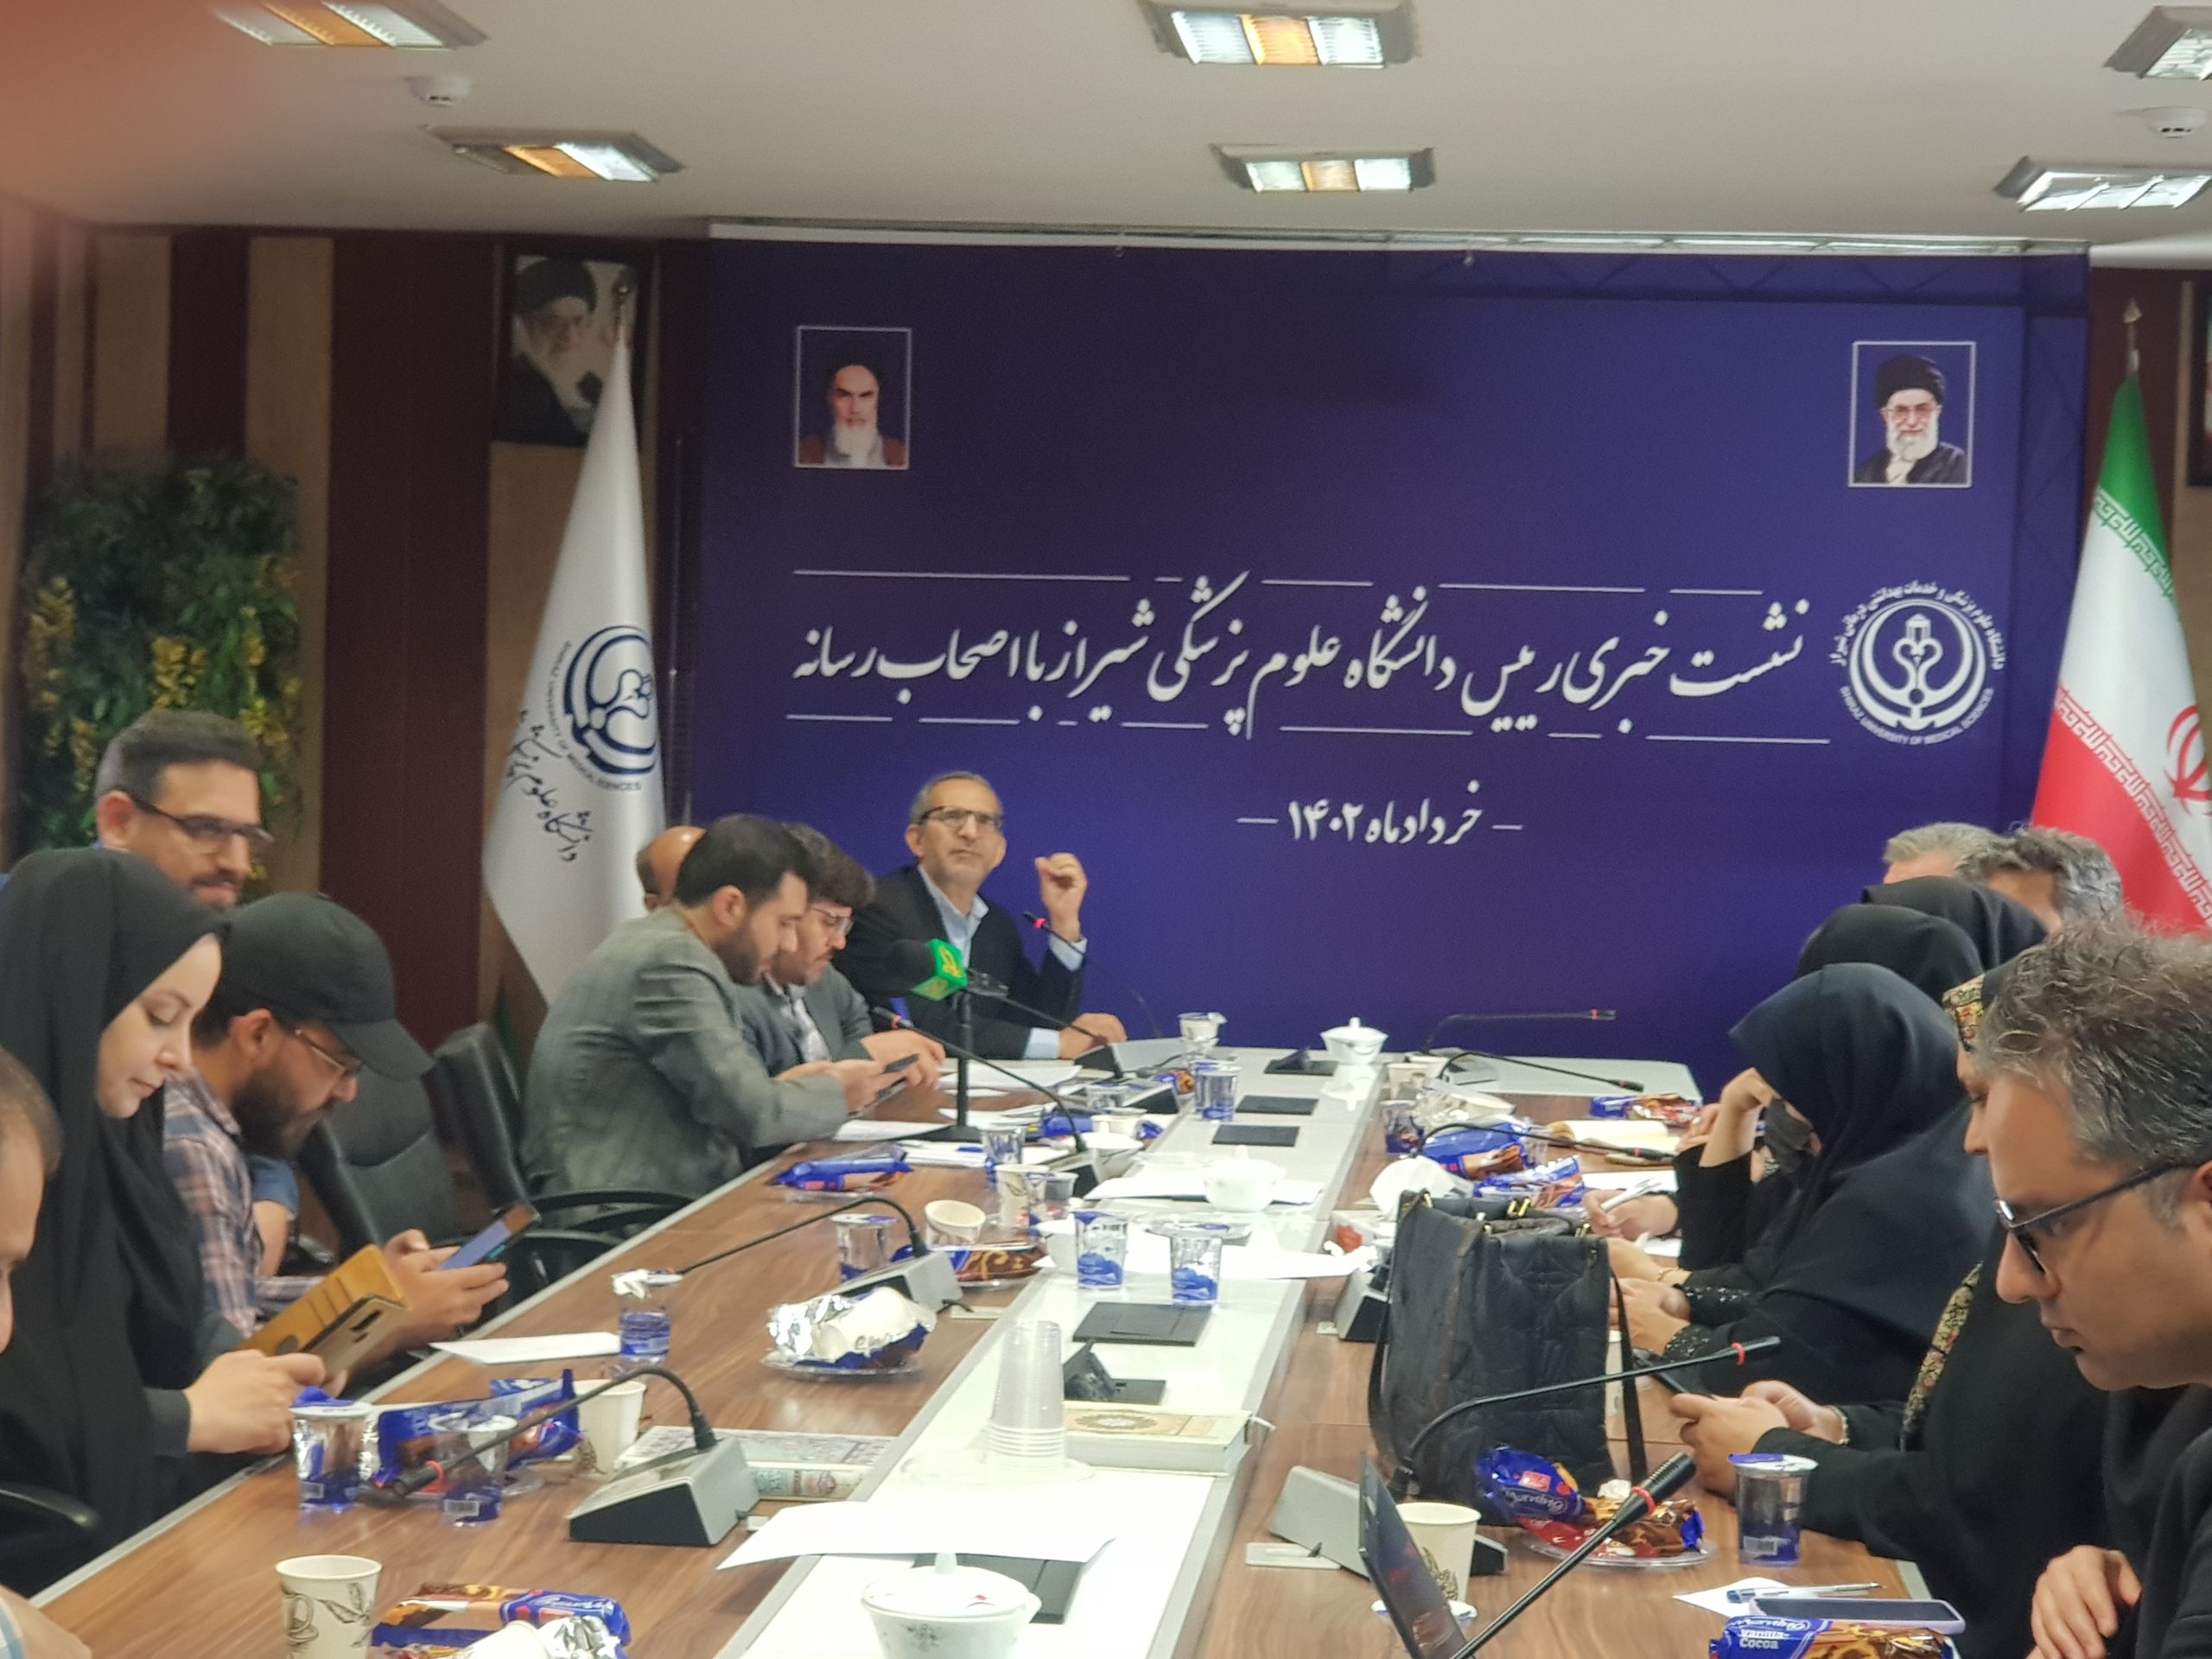 ۵۰درصد ارائه خدمات درمانی شیراز به افراد غیربومی است